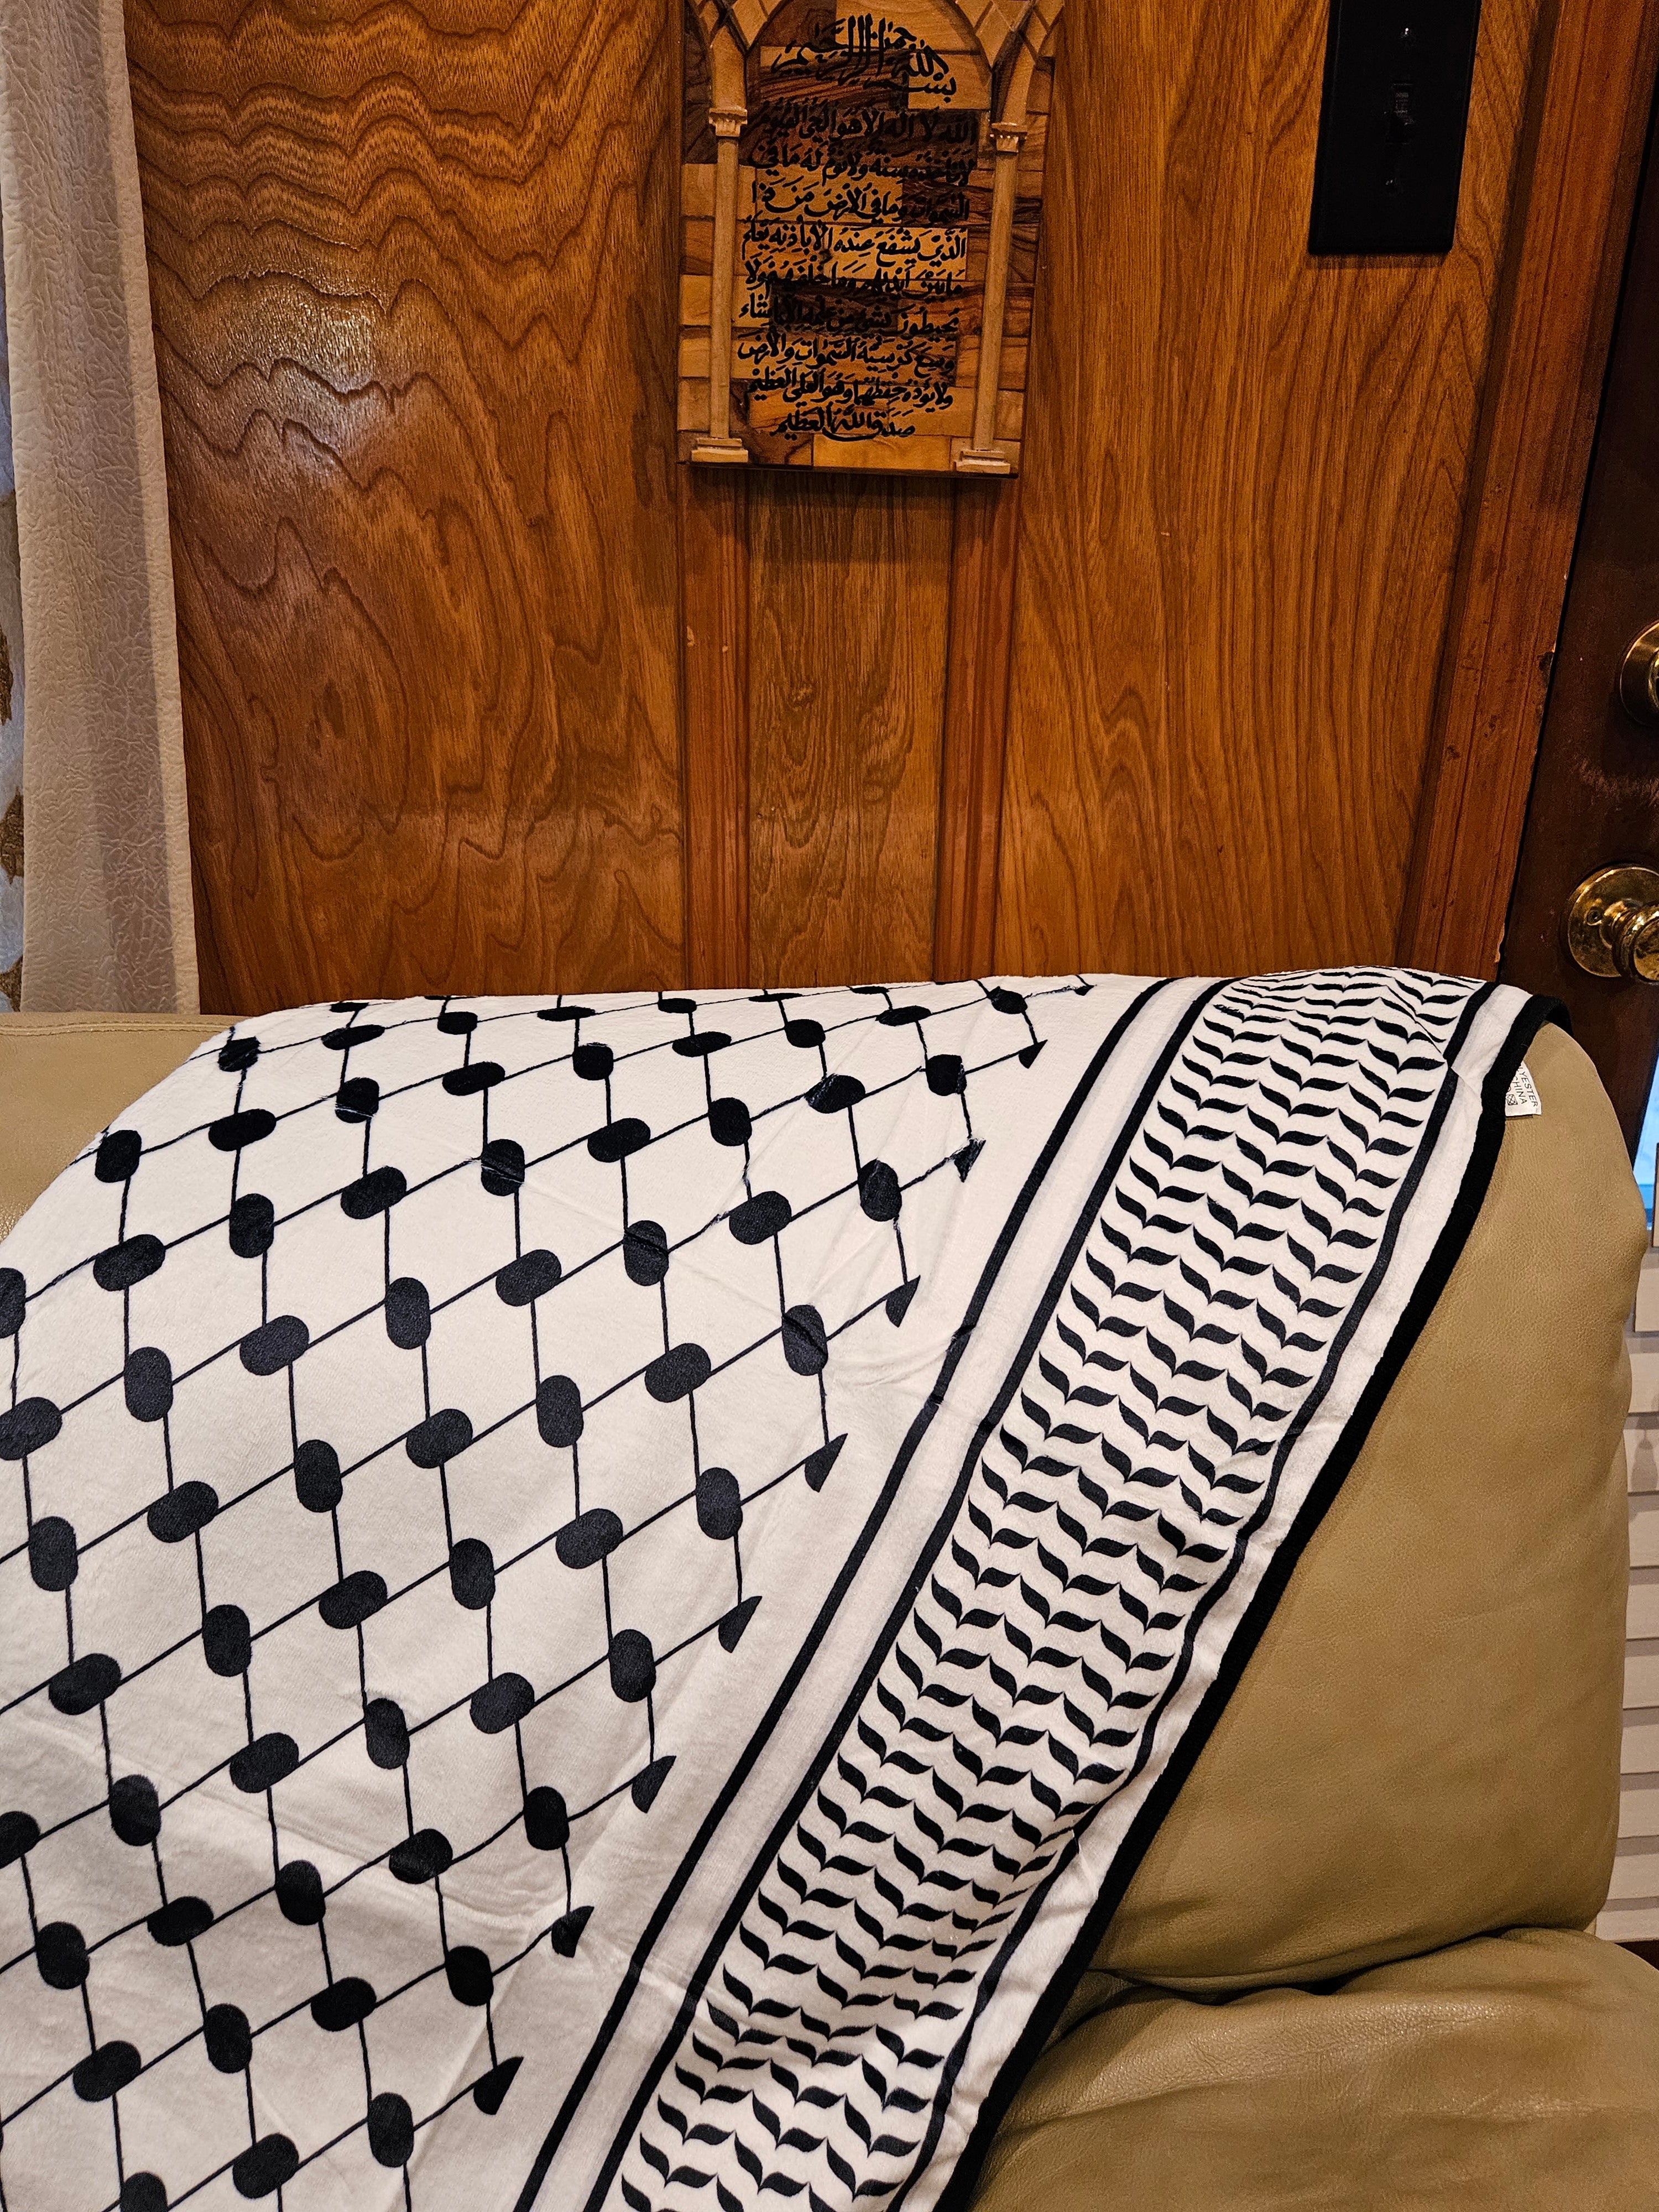 Palestine Keffiyeh Blanket Throw 50 in x 70 in - Habibi Heritage